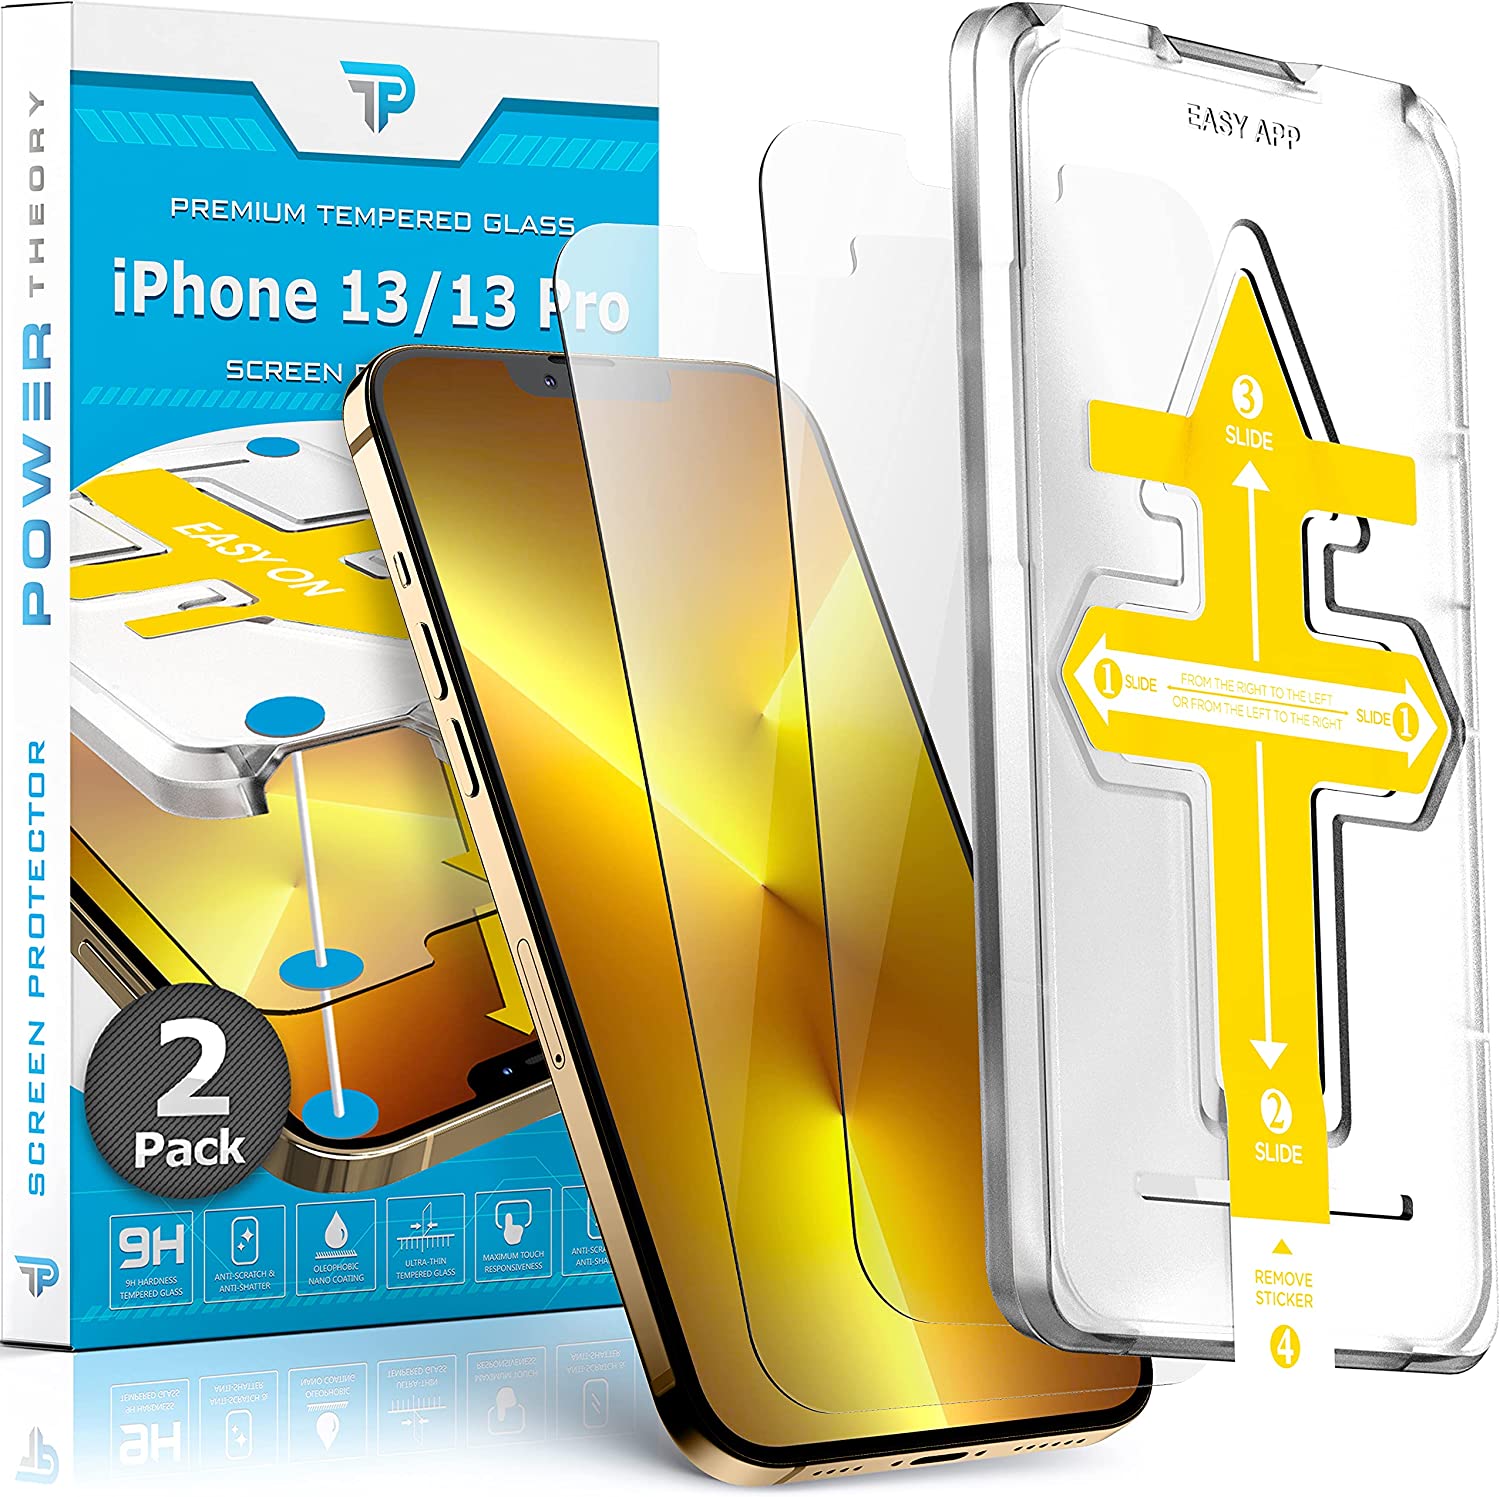 Protector de Pantalla - 9H - Saii 3D Premium para iPhone 13/13 Pro